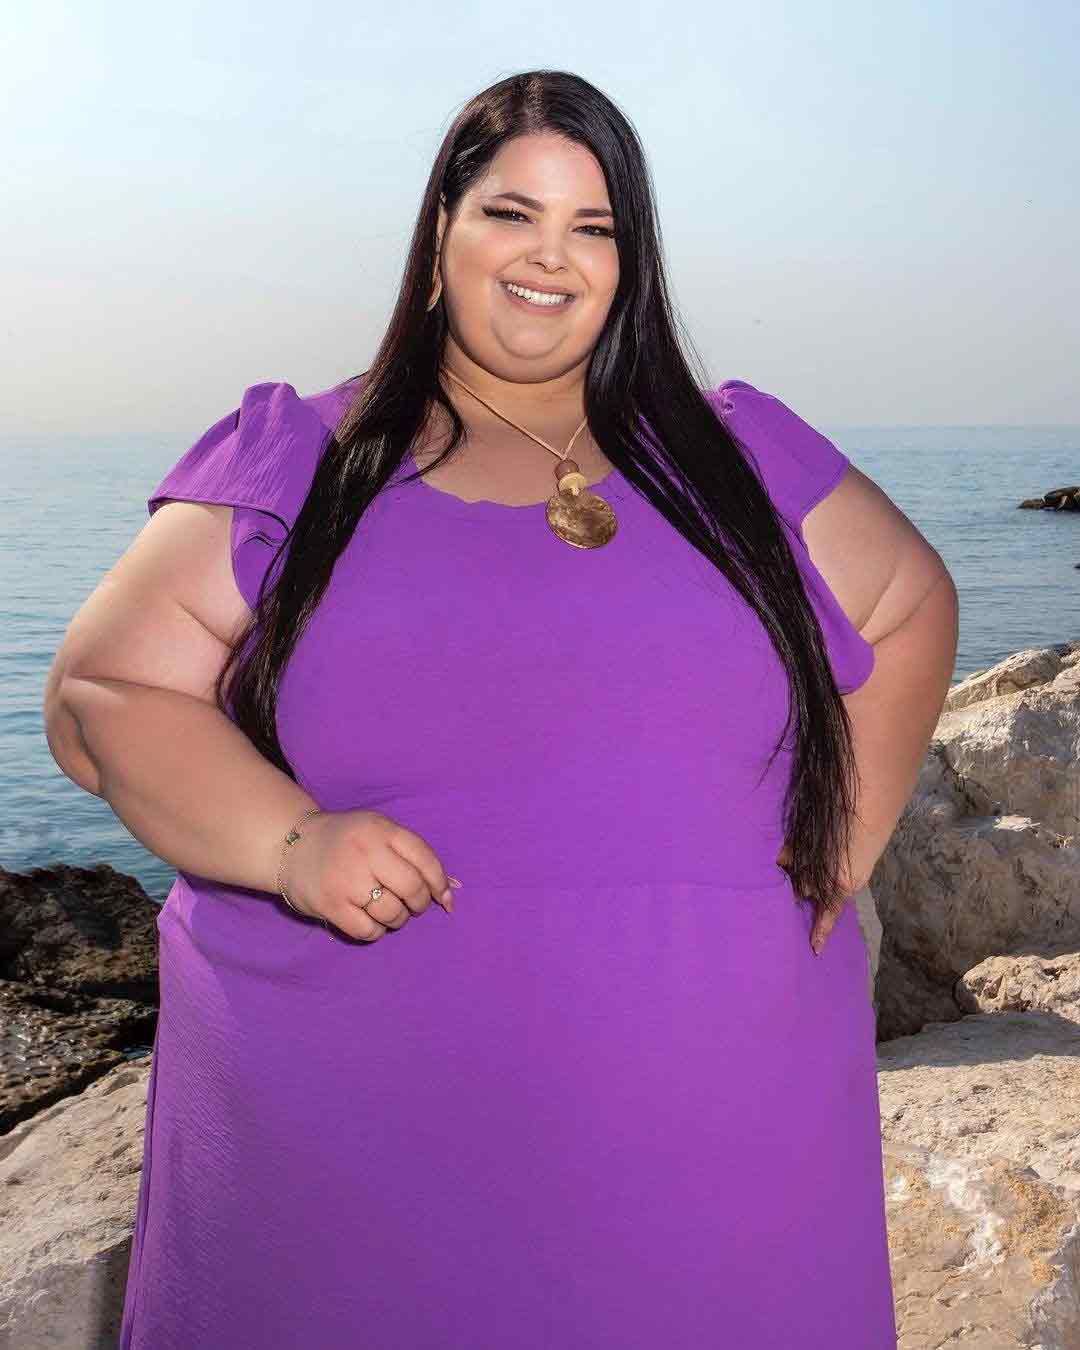 Brezilyalı büyük beden model isyan etti: "Çok kilolu olduğum için uçağa alınmadım"